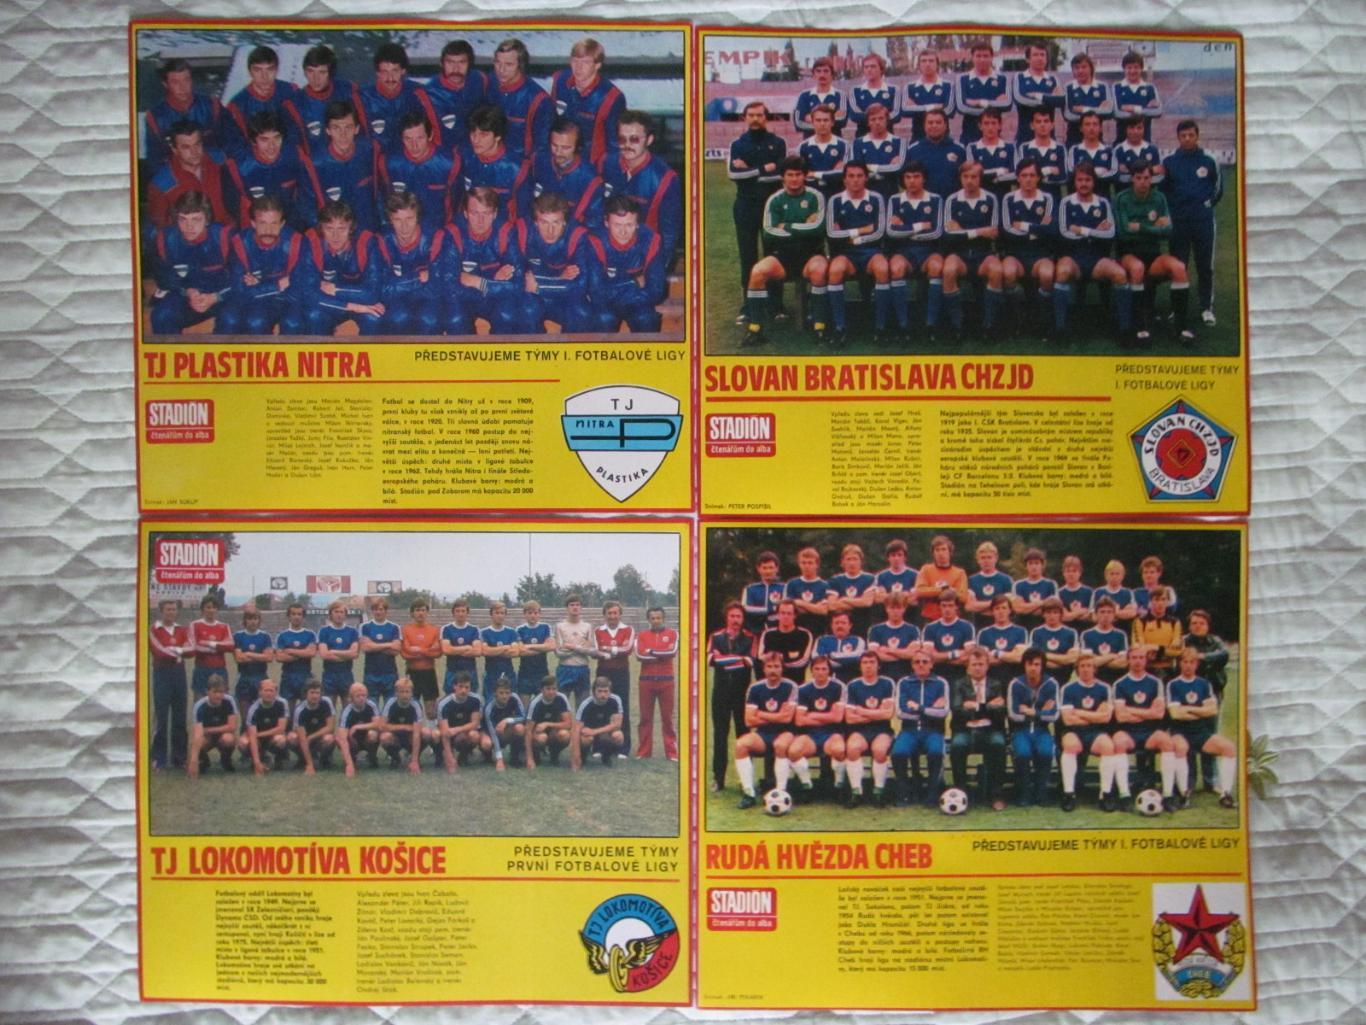 Постеры команд ЧССР из журнала Stadion/Стадион 1980г